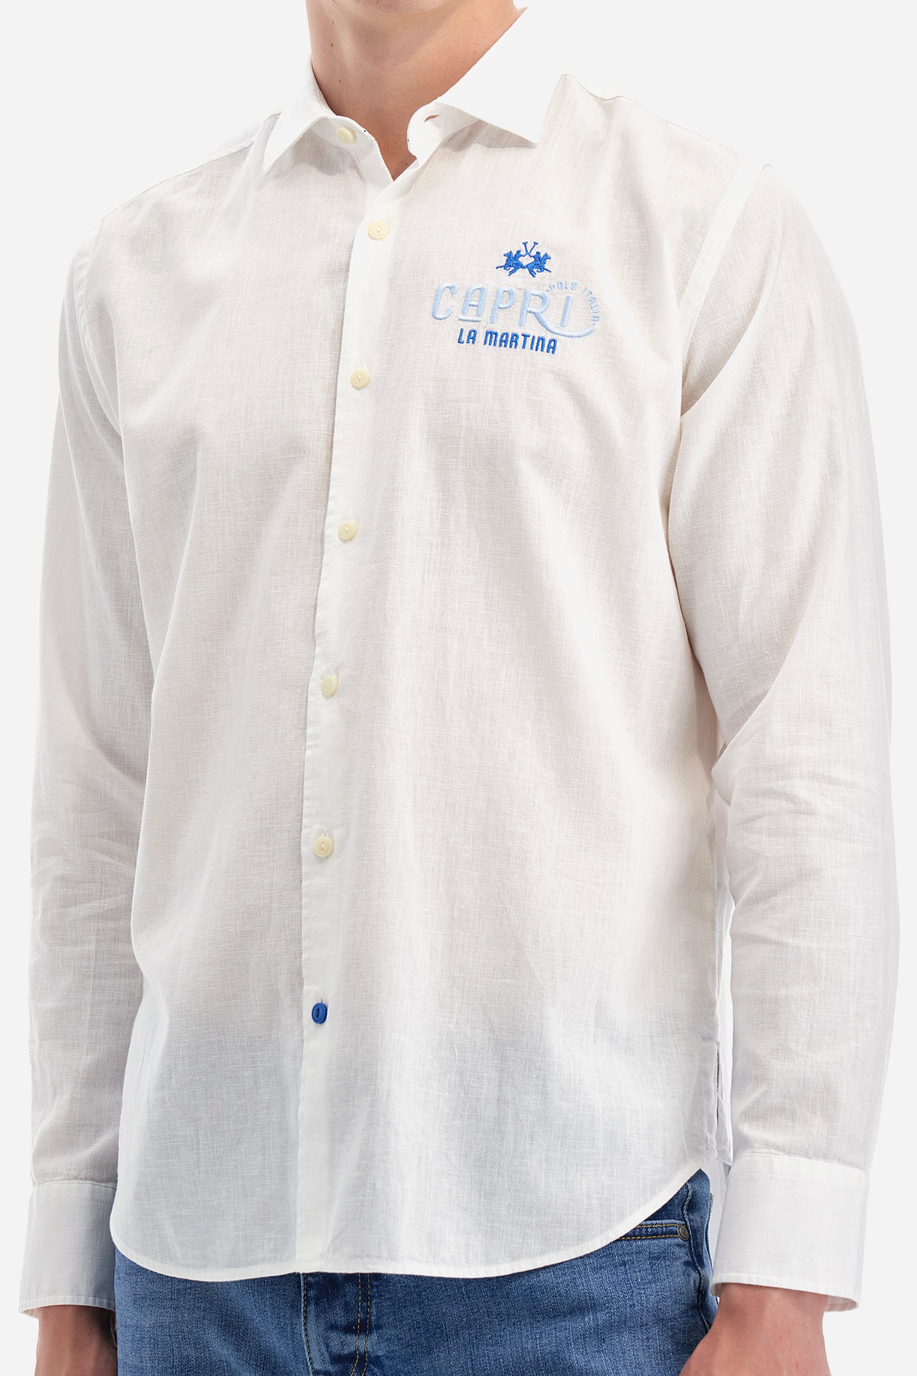 Camicia in cotone e lino - Innocent - Taglie XL | La Martina - Official Online Shop